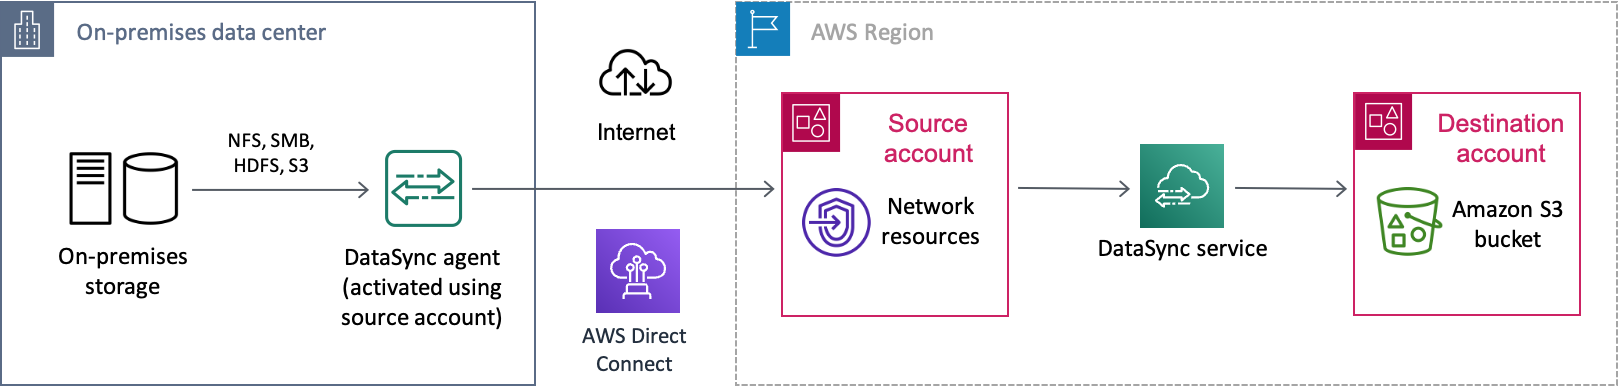 Contoh DataSync skenario perpindahan data dari sistem penyimpanan lokal melalui AWS Direct Connect koneksi di internet. AWS Data pertama kali ditransfer ke satu Akun AWS (akun sumber Anda), sebelum akhirnya membuatnya menjadi ember Amazon S3 di akun lain Akun AWS (akun tujuan Anda).